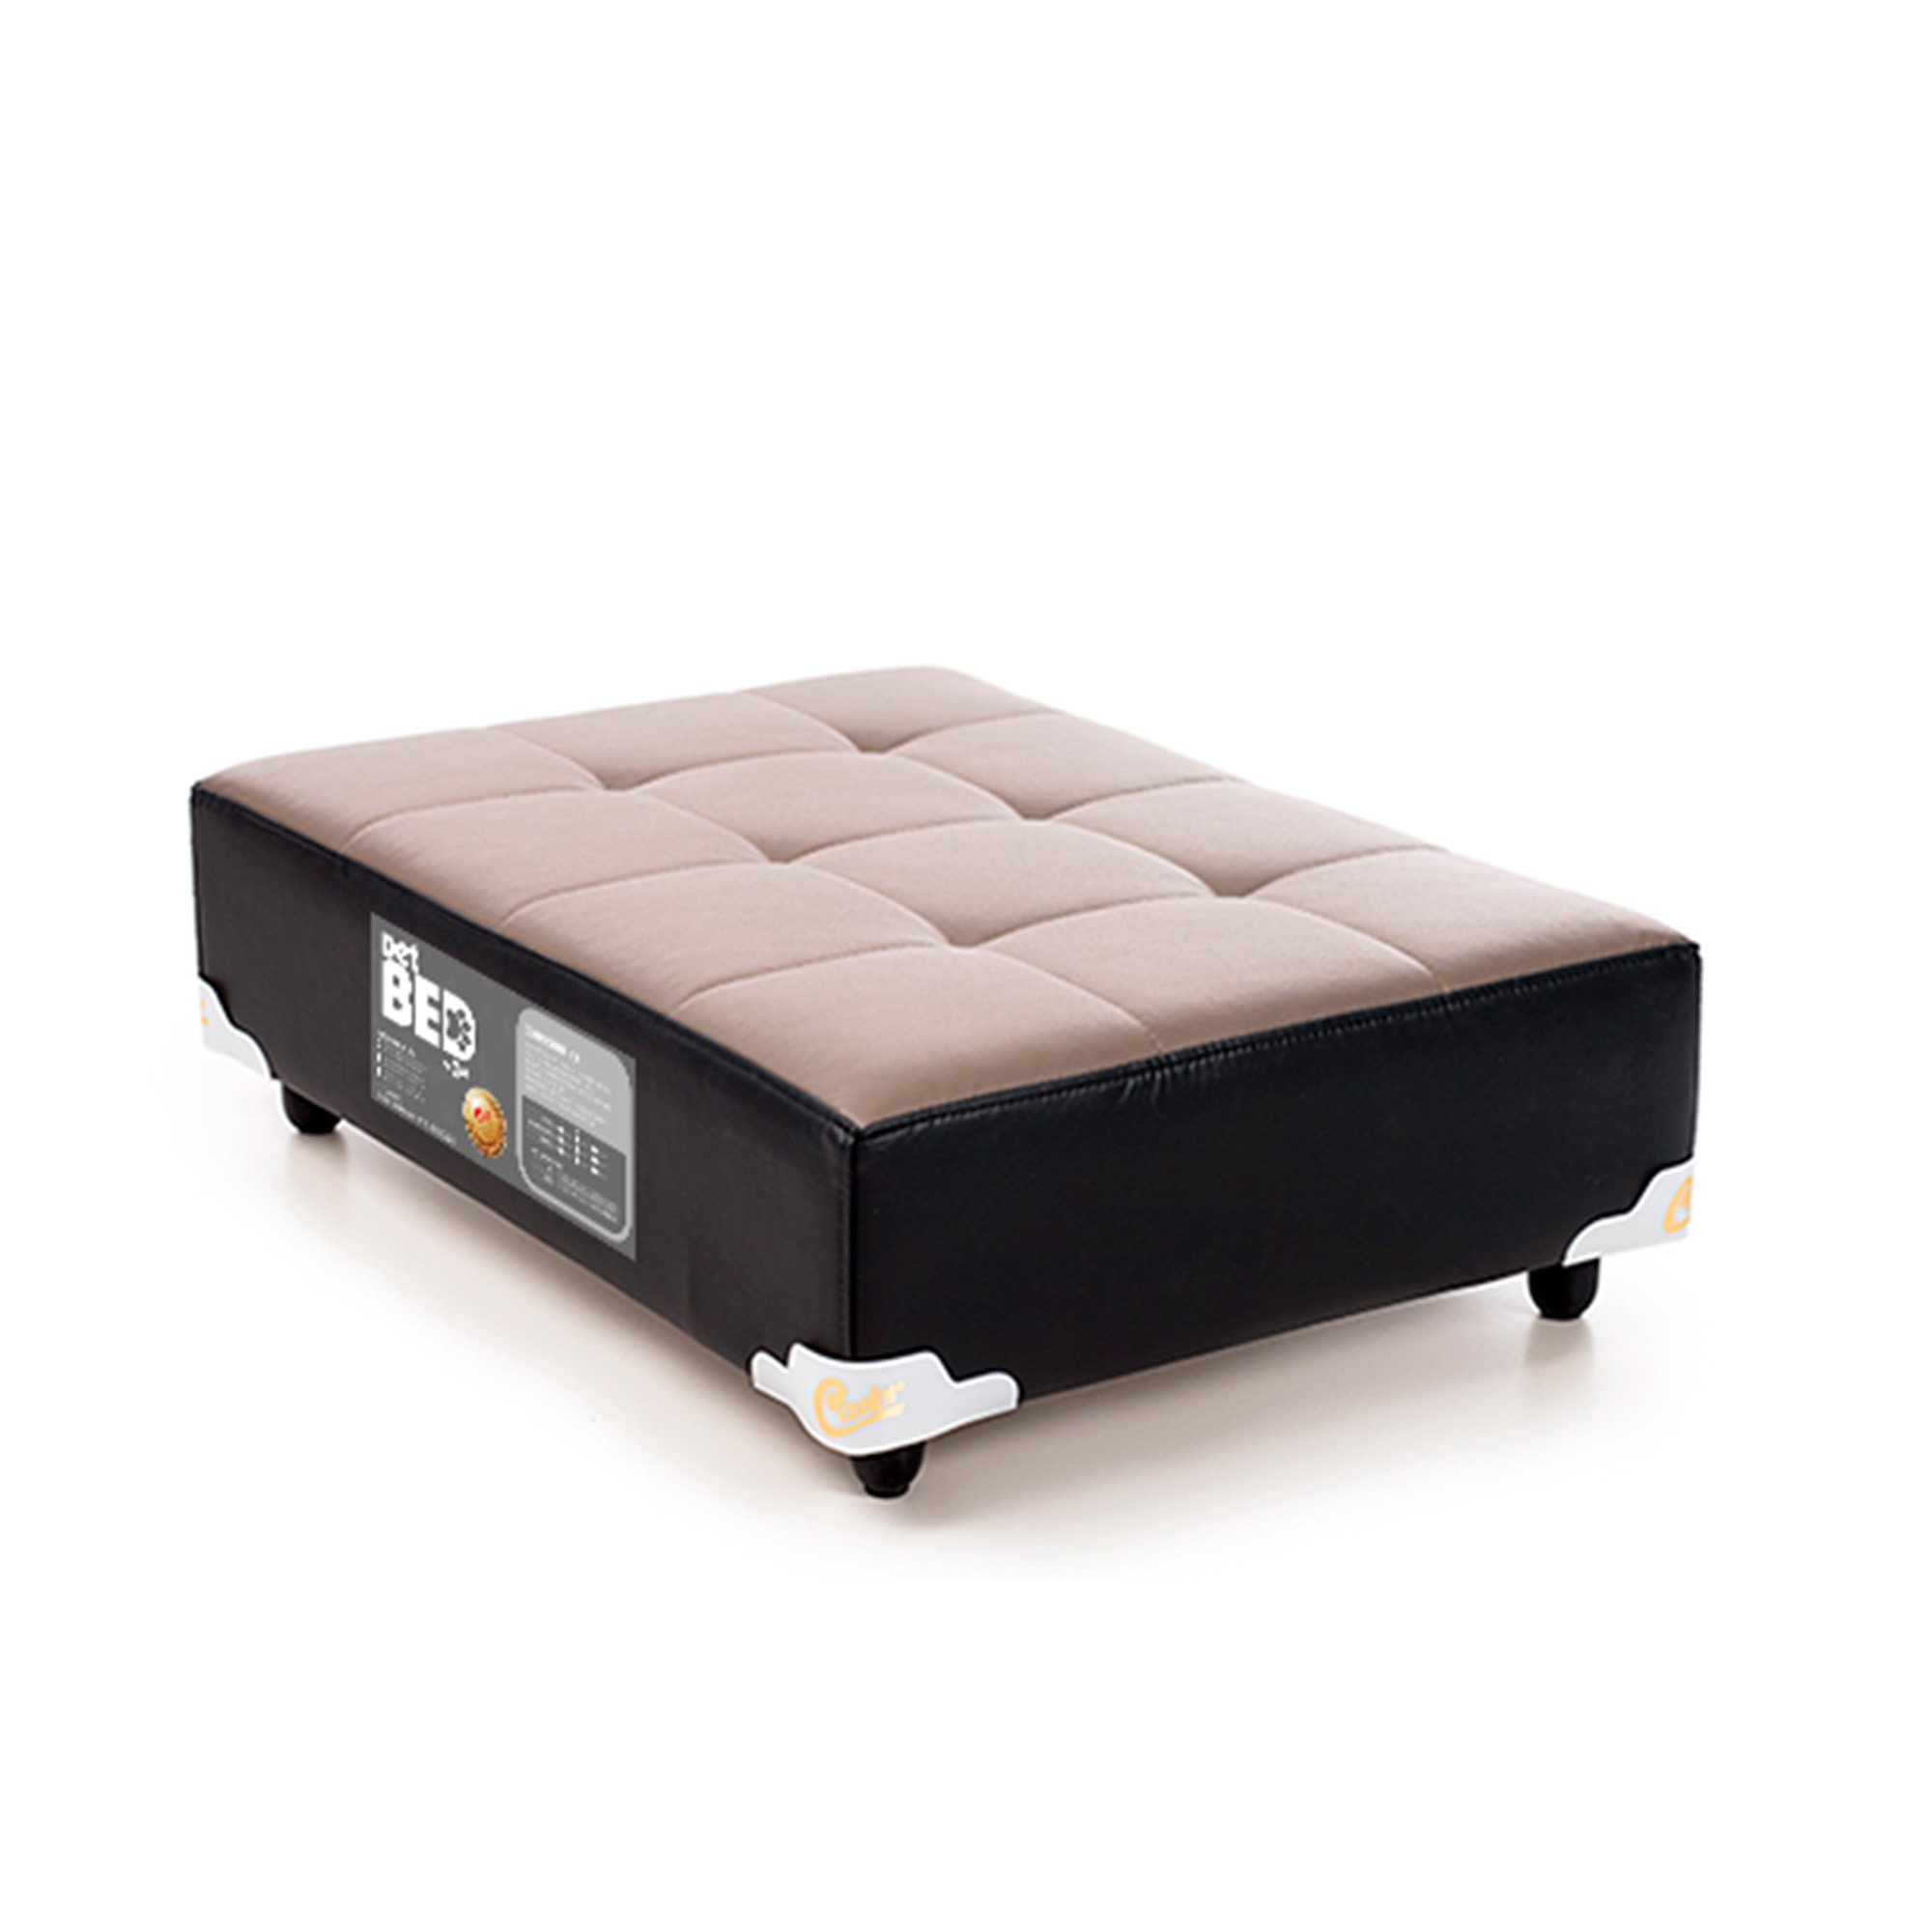 Cama PET Bed Castor, Cinza e Preto, Tamanho M - 80 x 60 cm